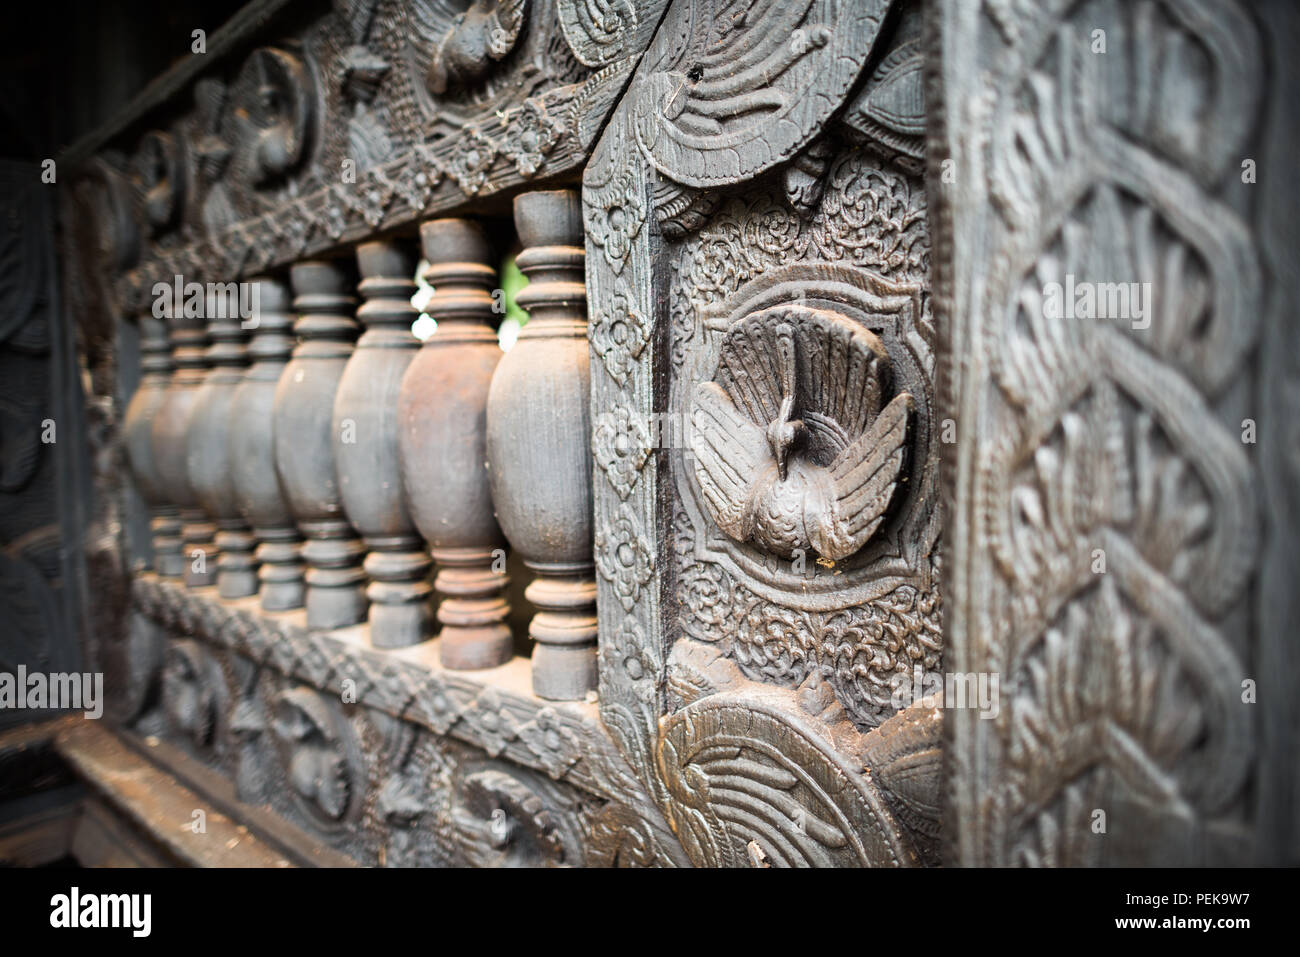 INWA (AVA), Myanmar – komplexe Holzschnitzereien in Teakholz schmücken das Bagaya-Kloster in Inwa, Myanmar. Das Kloster Bagaya (auch bekannt als Bagaya Kyaung) wurde 1834 während der Herrschaft von König Bagyidaw erbaut. Er besteht vollständig aus Teakholz, mit 267 riesigen Teakholzpfählen, von denen der größte 60 m hoch und 9 m Umfang ist. Es liegt in der alten königlichen Hauptstadt von Inwa (Ava), nicht weit von Mandalay. Stockfoto